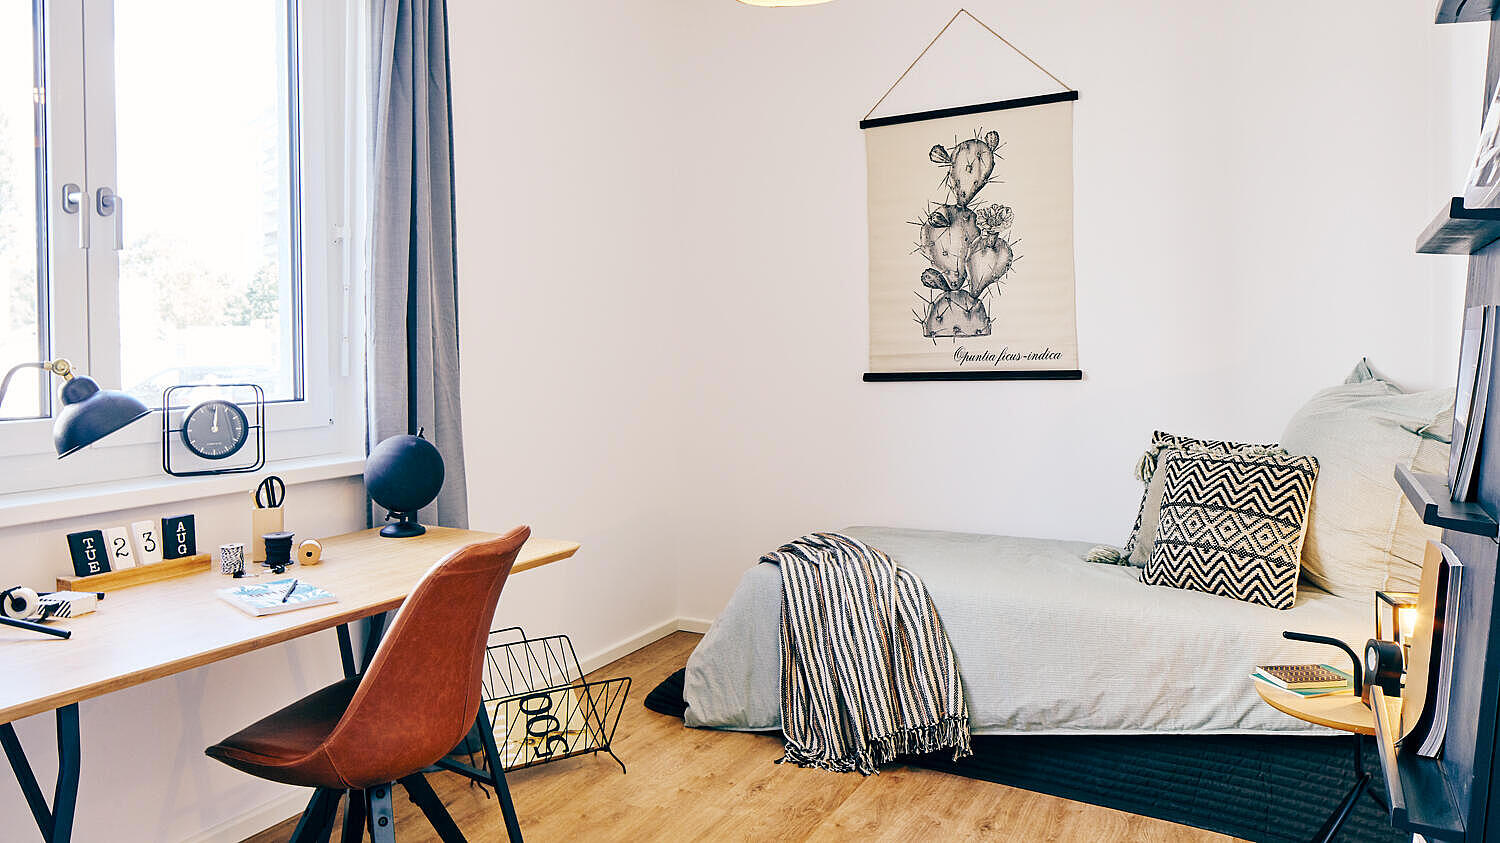 Musterwohnung im Quartier Stadtgut Hellersdorf: möbliertes Schlafzimmer mit Einzelbett